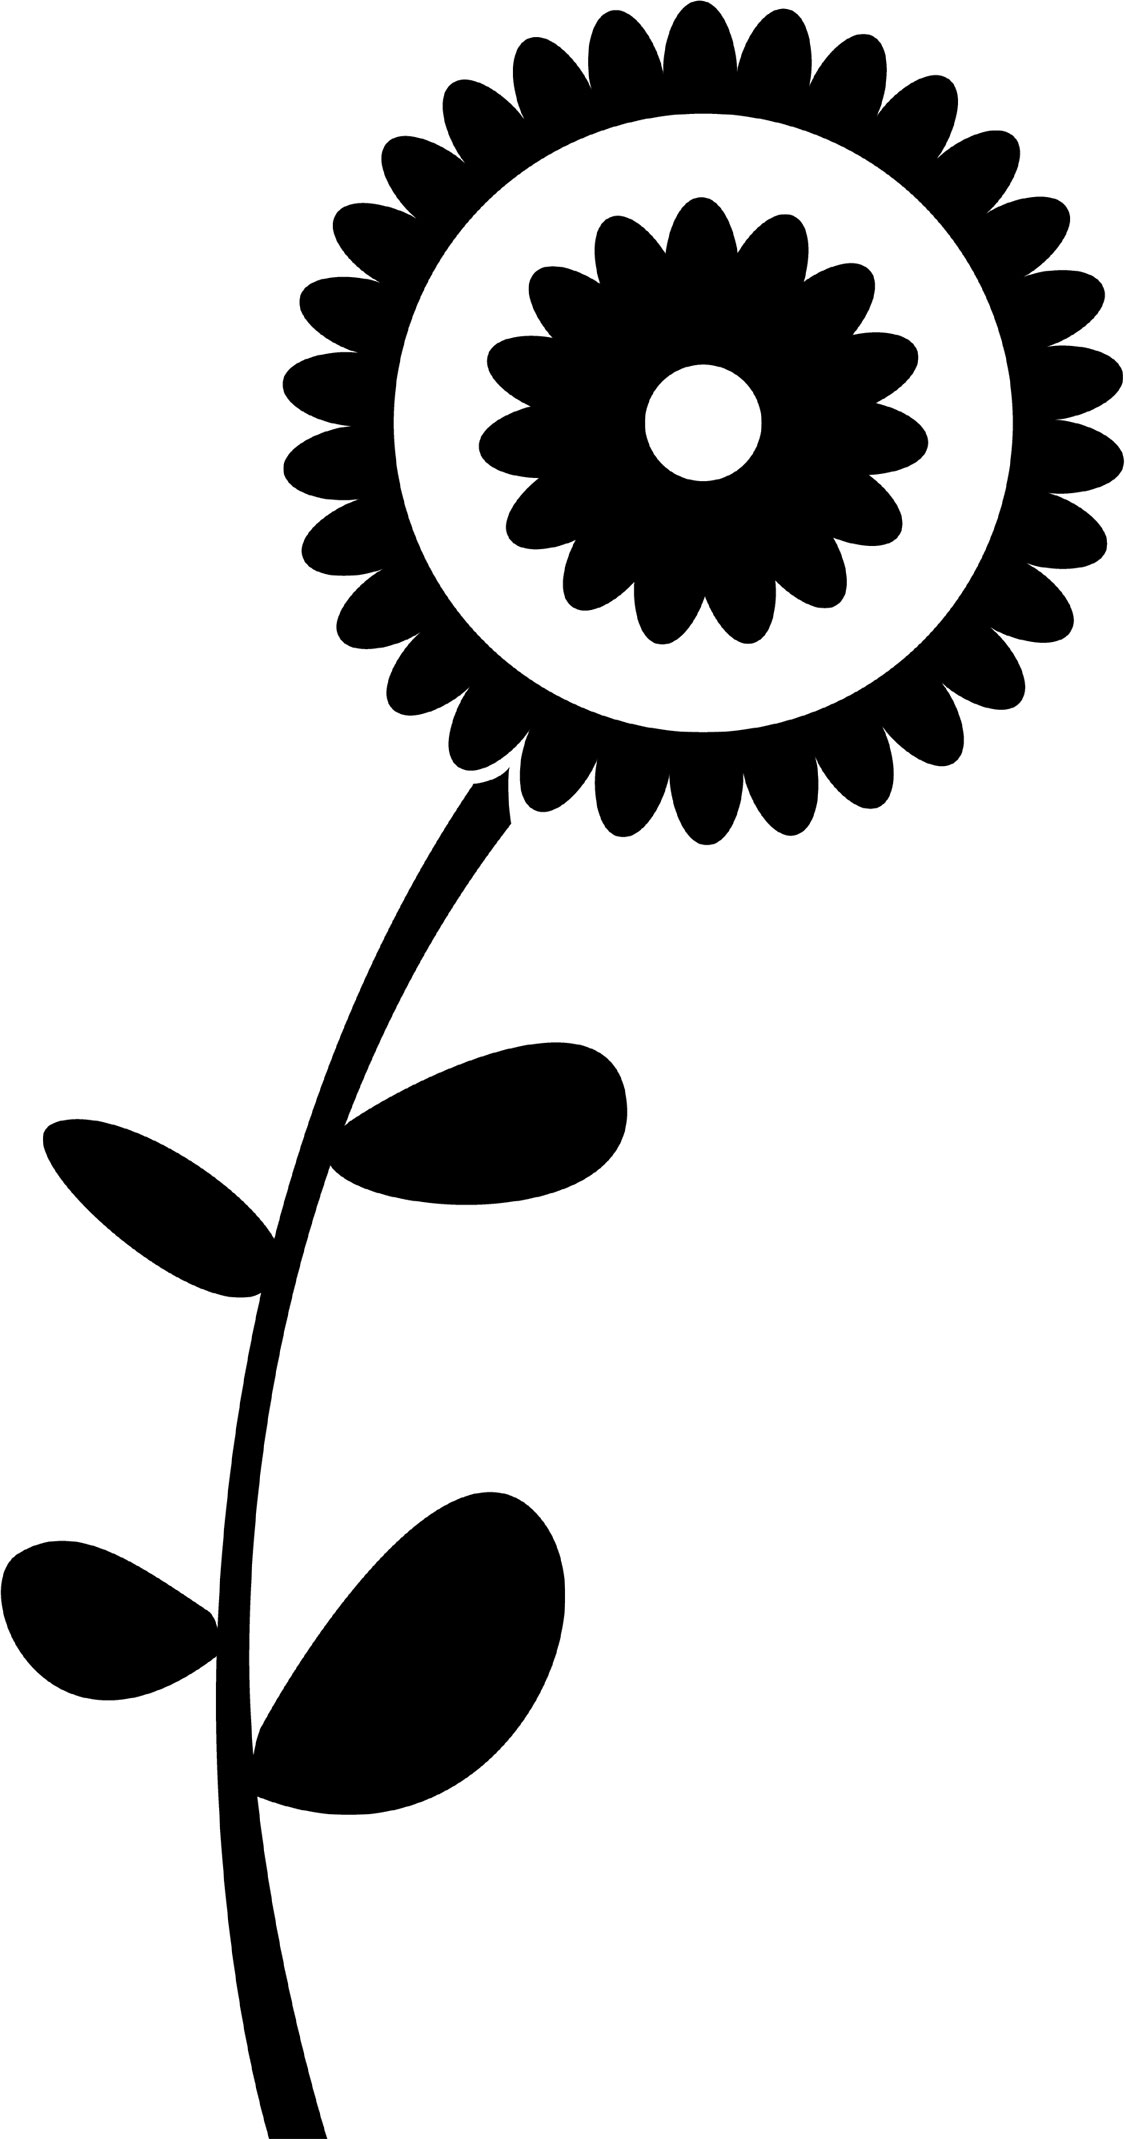 花のイラスト フリー素材 白黒 モノクロno 8 シンプル